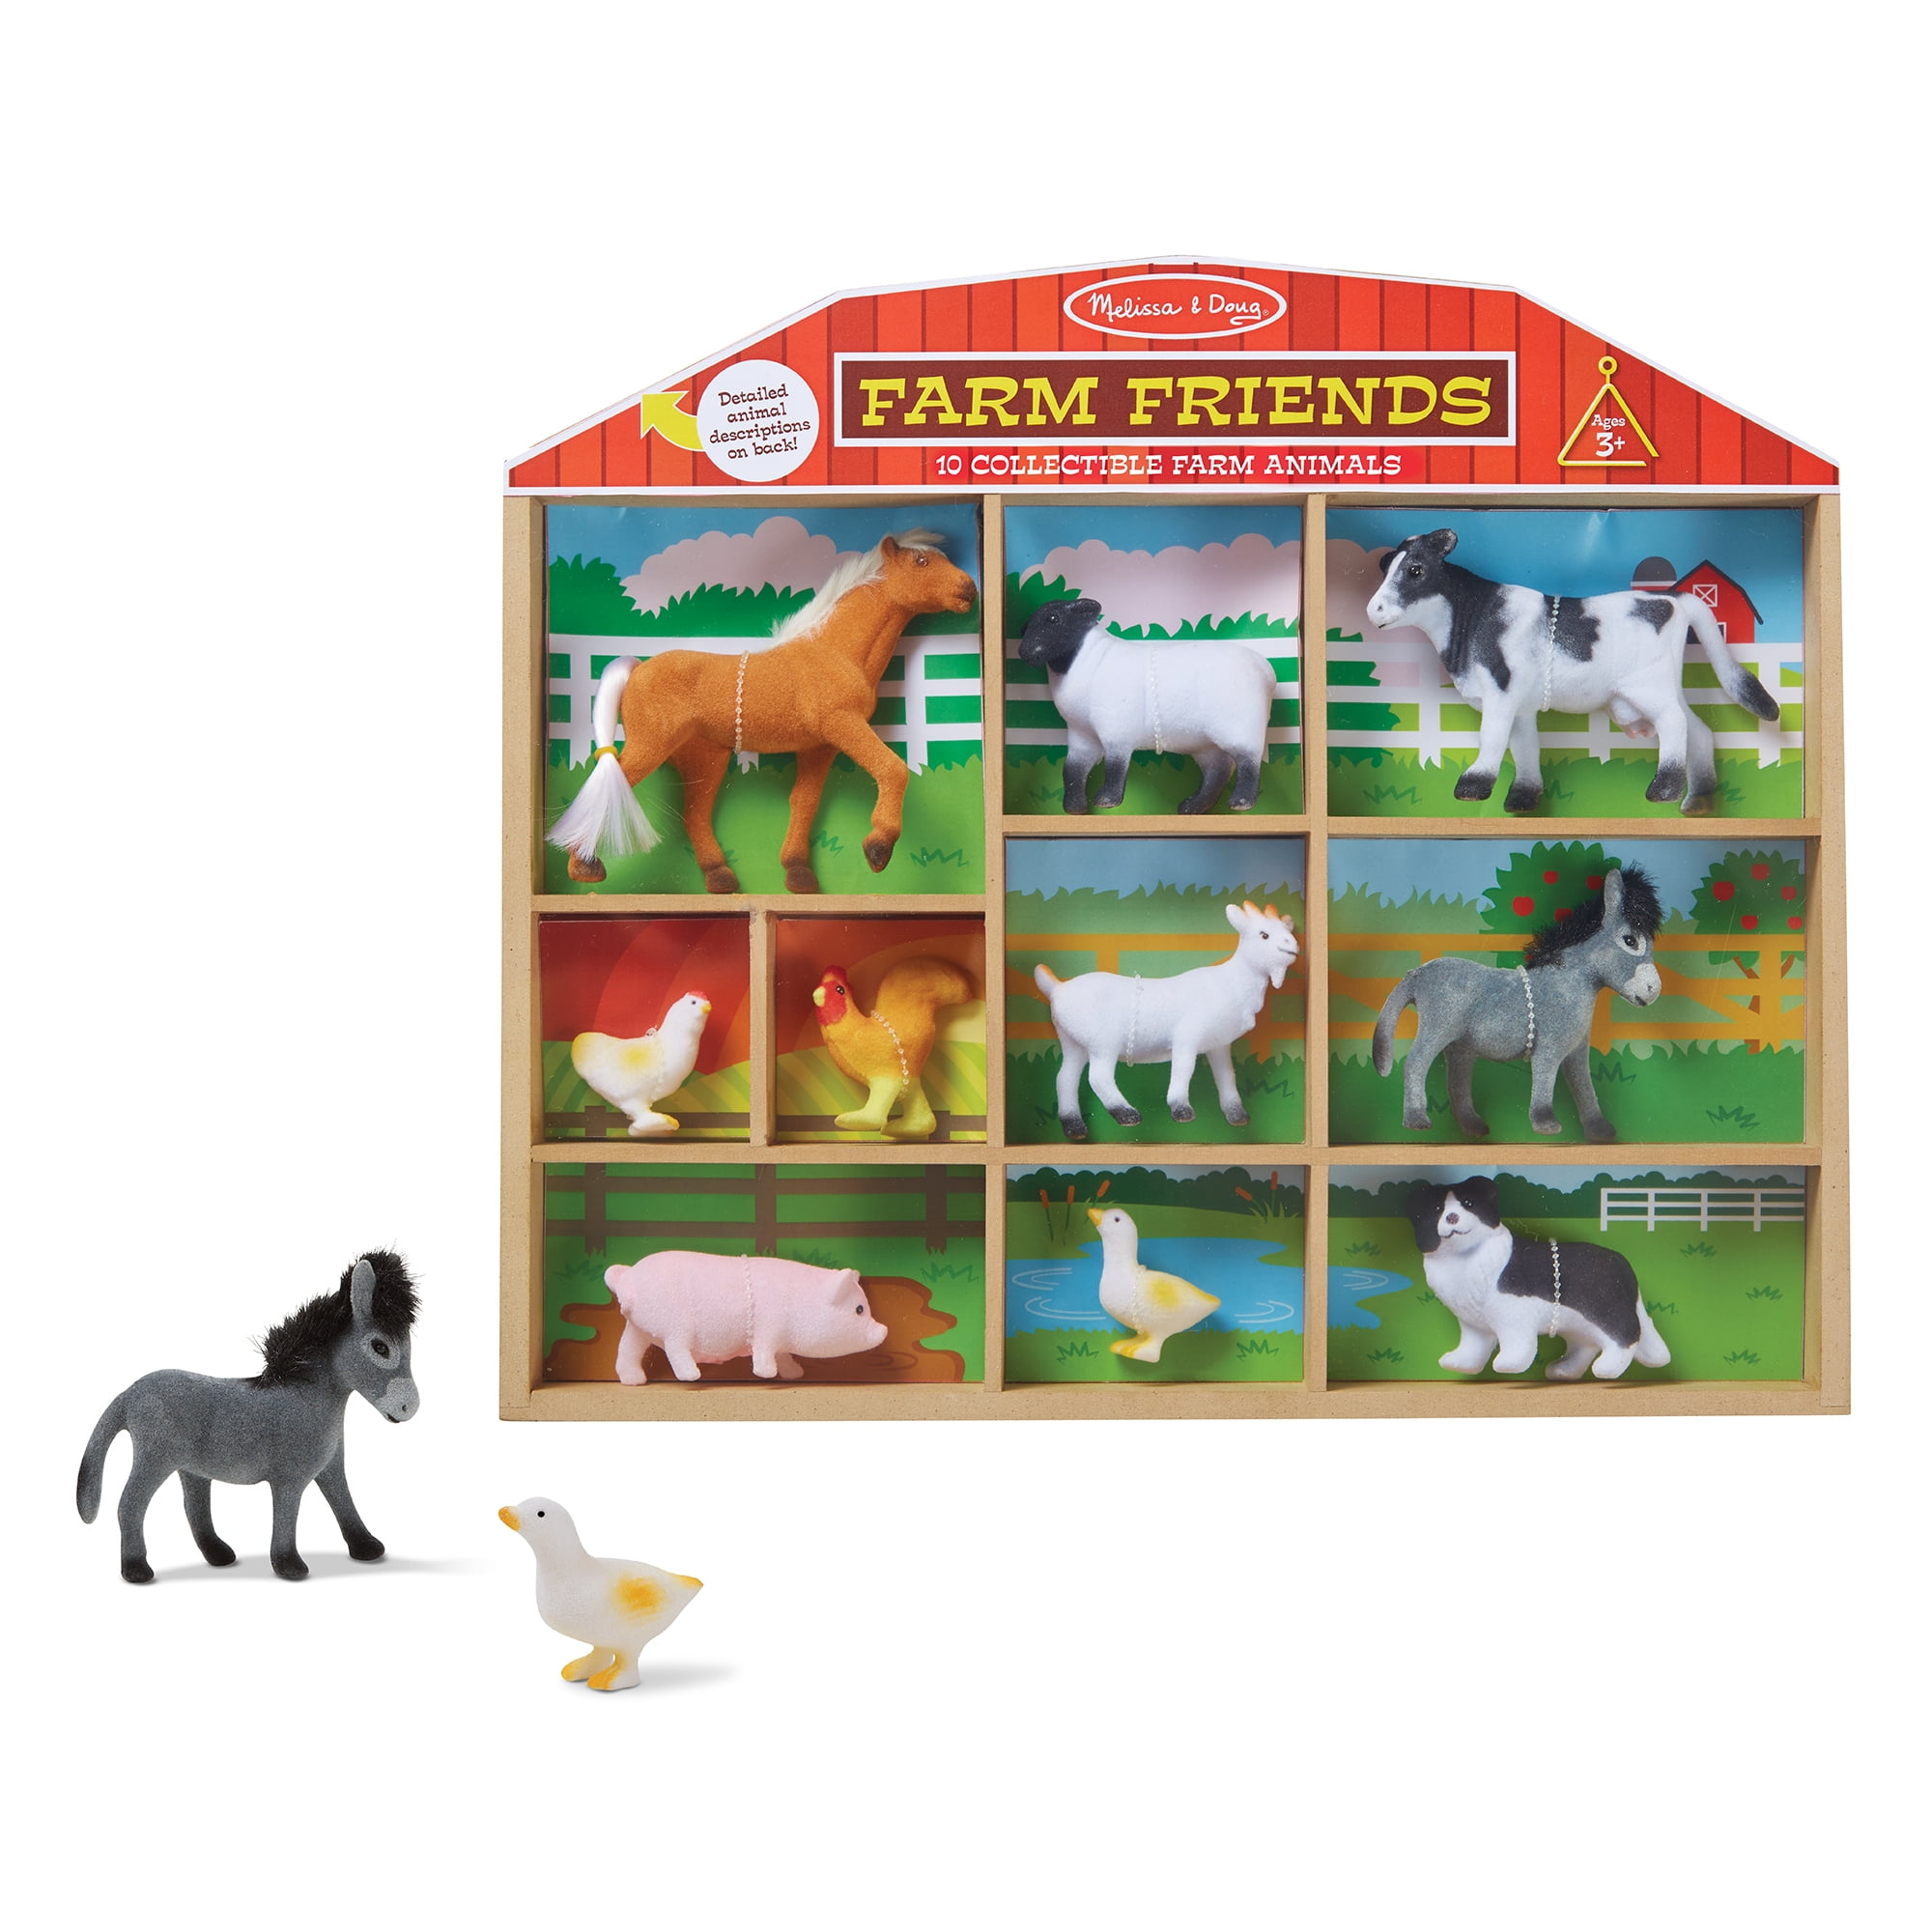 Littlest Pet Shop Lot of 3 Random Farm Animal Figures Pig Sheep Cow Authentic 